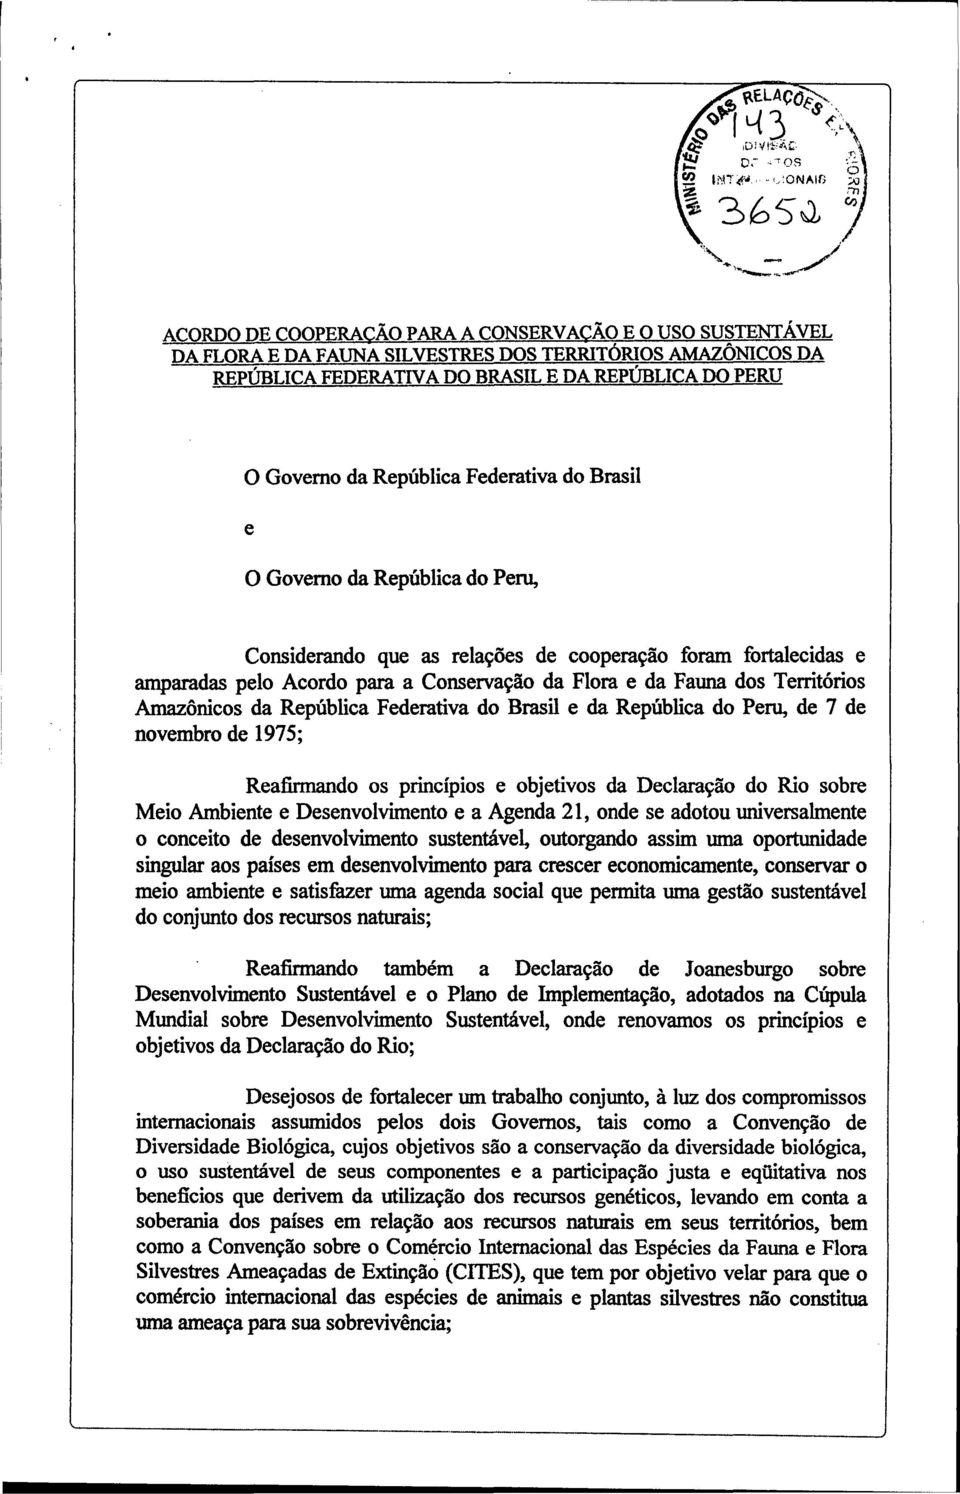 Amazônicos da República Federativa do Brasil e da República do Peru, de 7 de novembro de 1975; Reafirmando os princípios e objetivos da Declaração do Rio sobre Meio Ambiente e Desenvolvimento e a